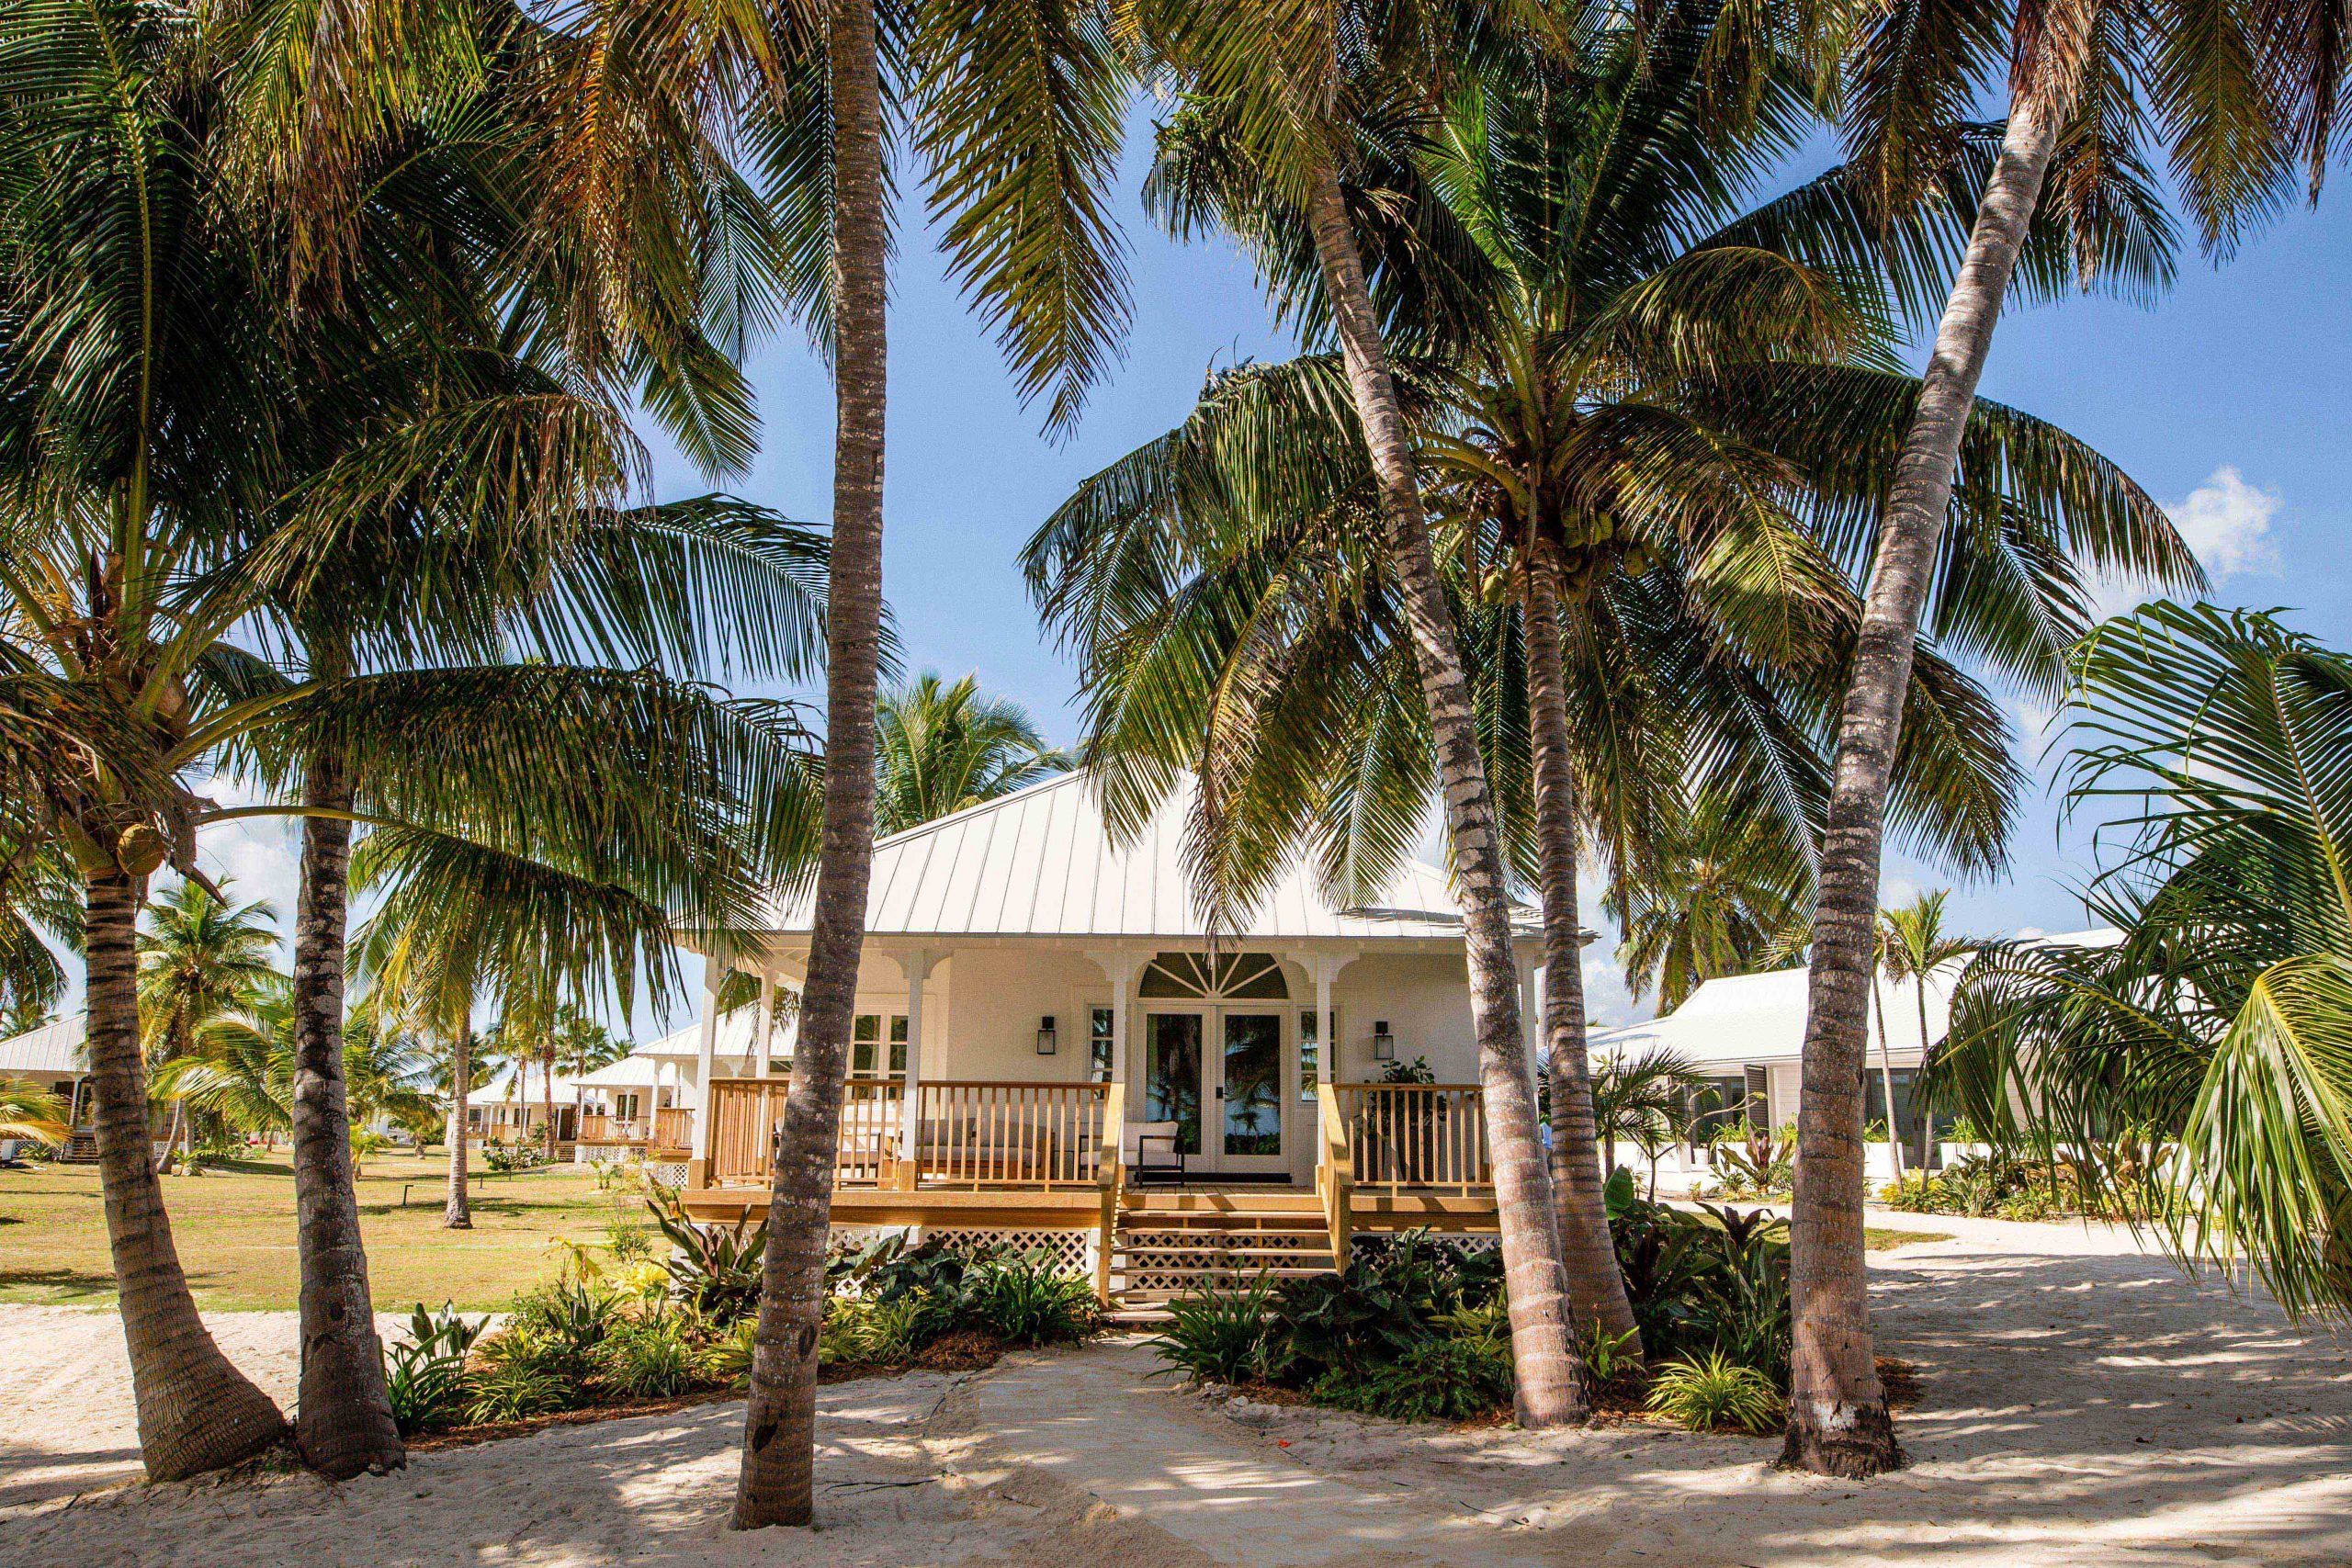 A tropical Caribbean villa